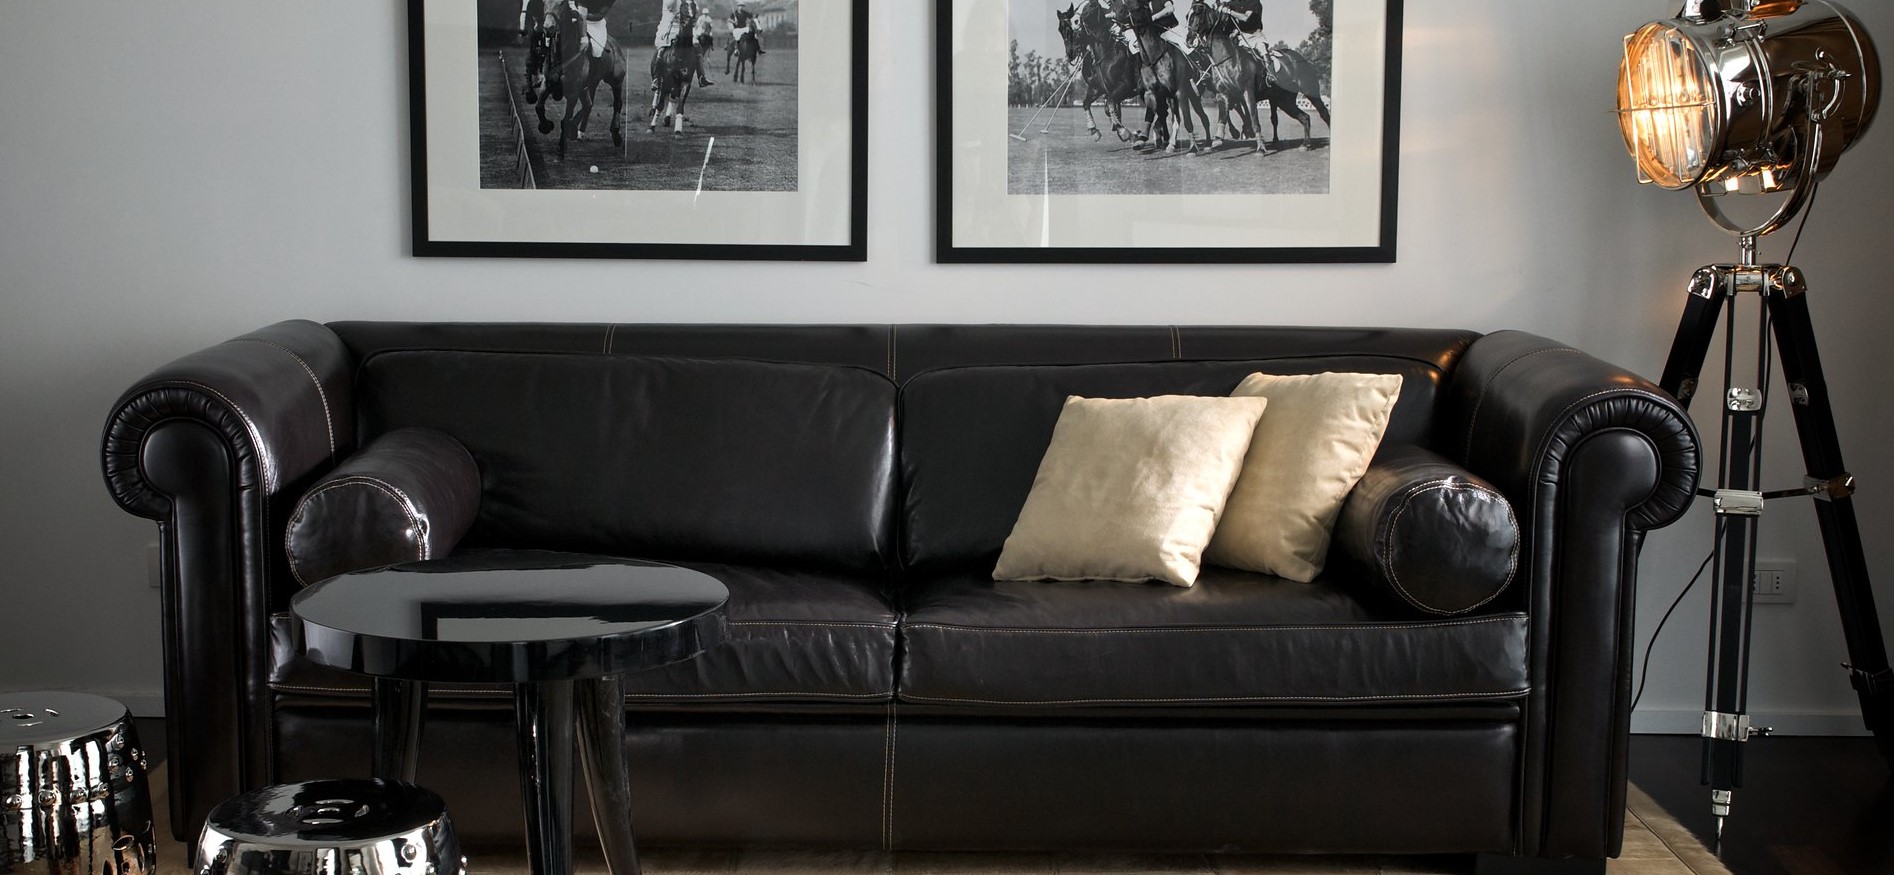 Черный кожаный диван отлично гармонирует с мебелью и декором в интерьере 